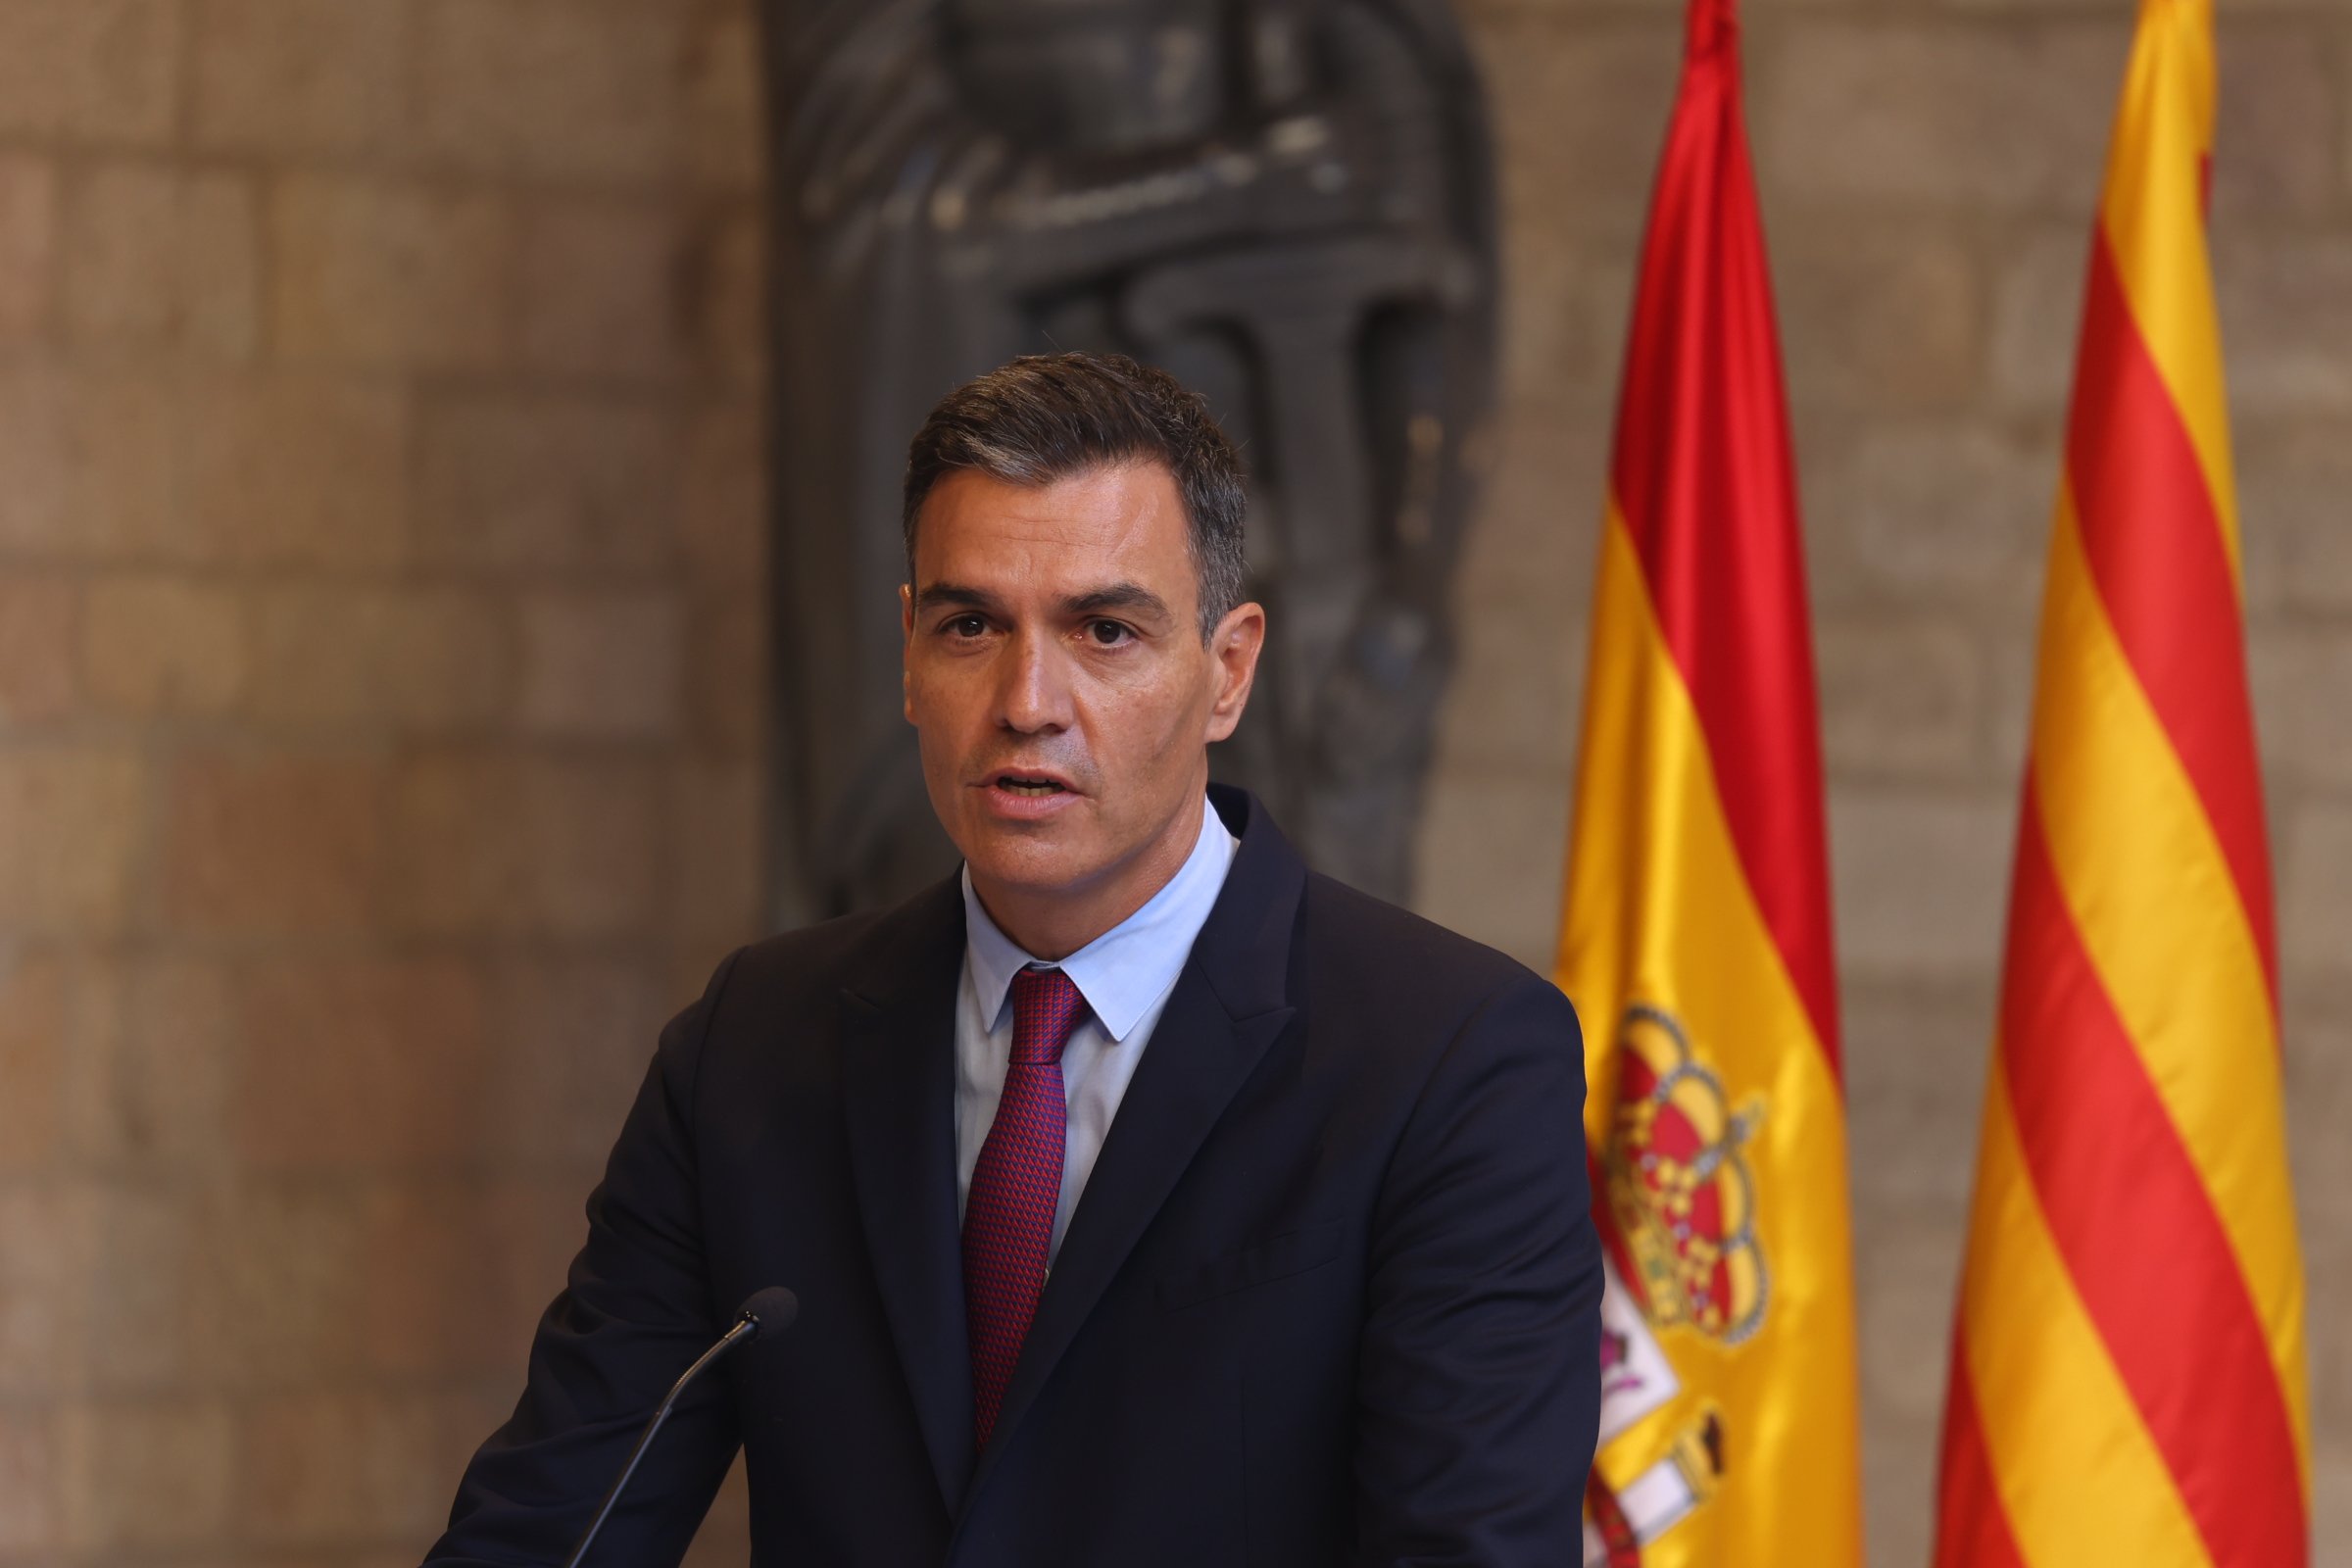 ¿Crees que Pedro Sánchez está detrás de la detención de Puigdemont?